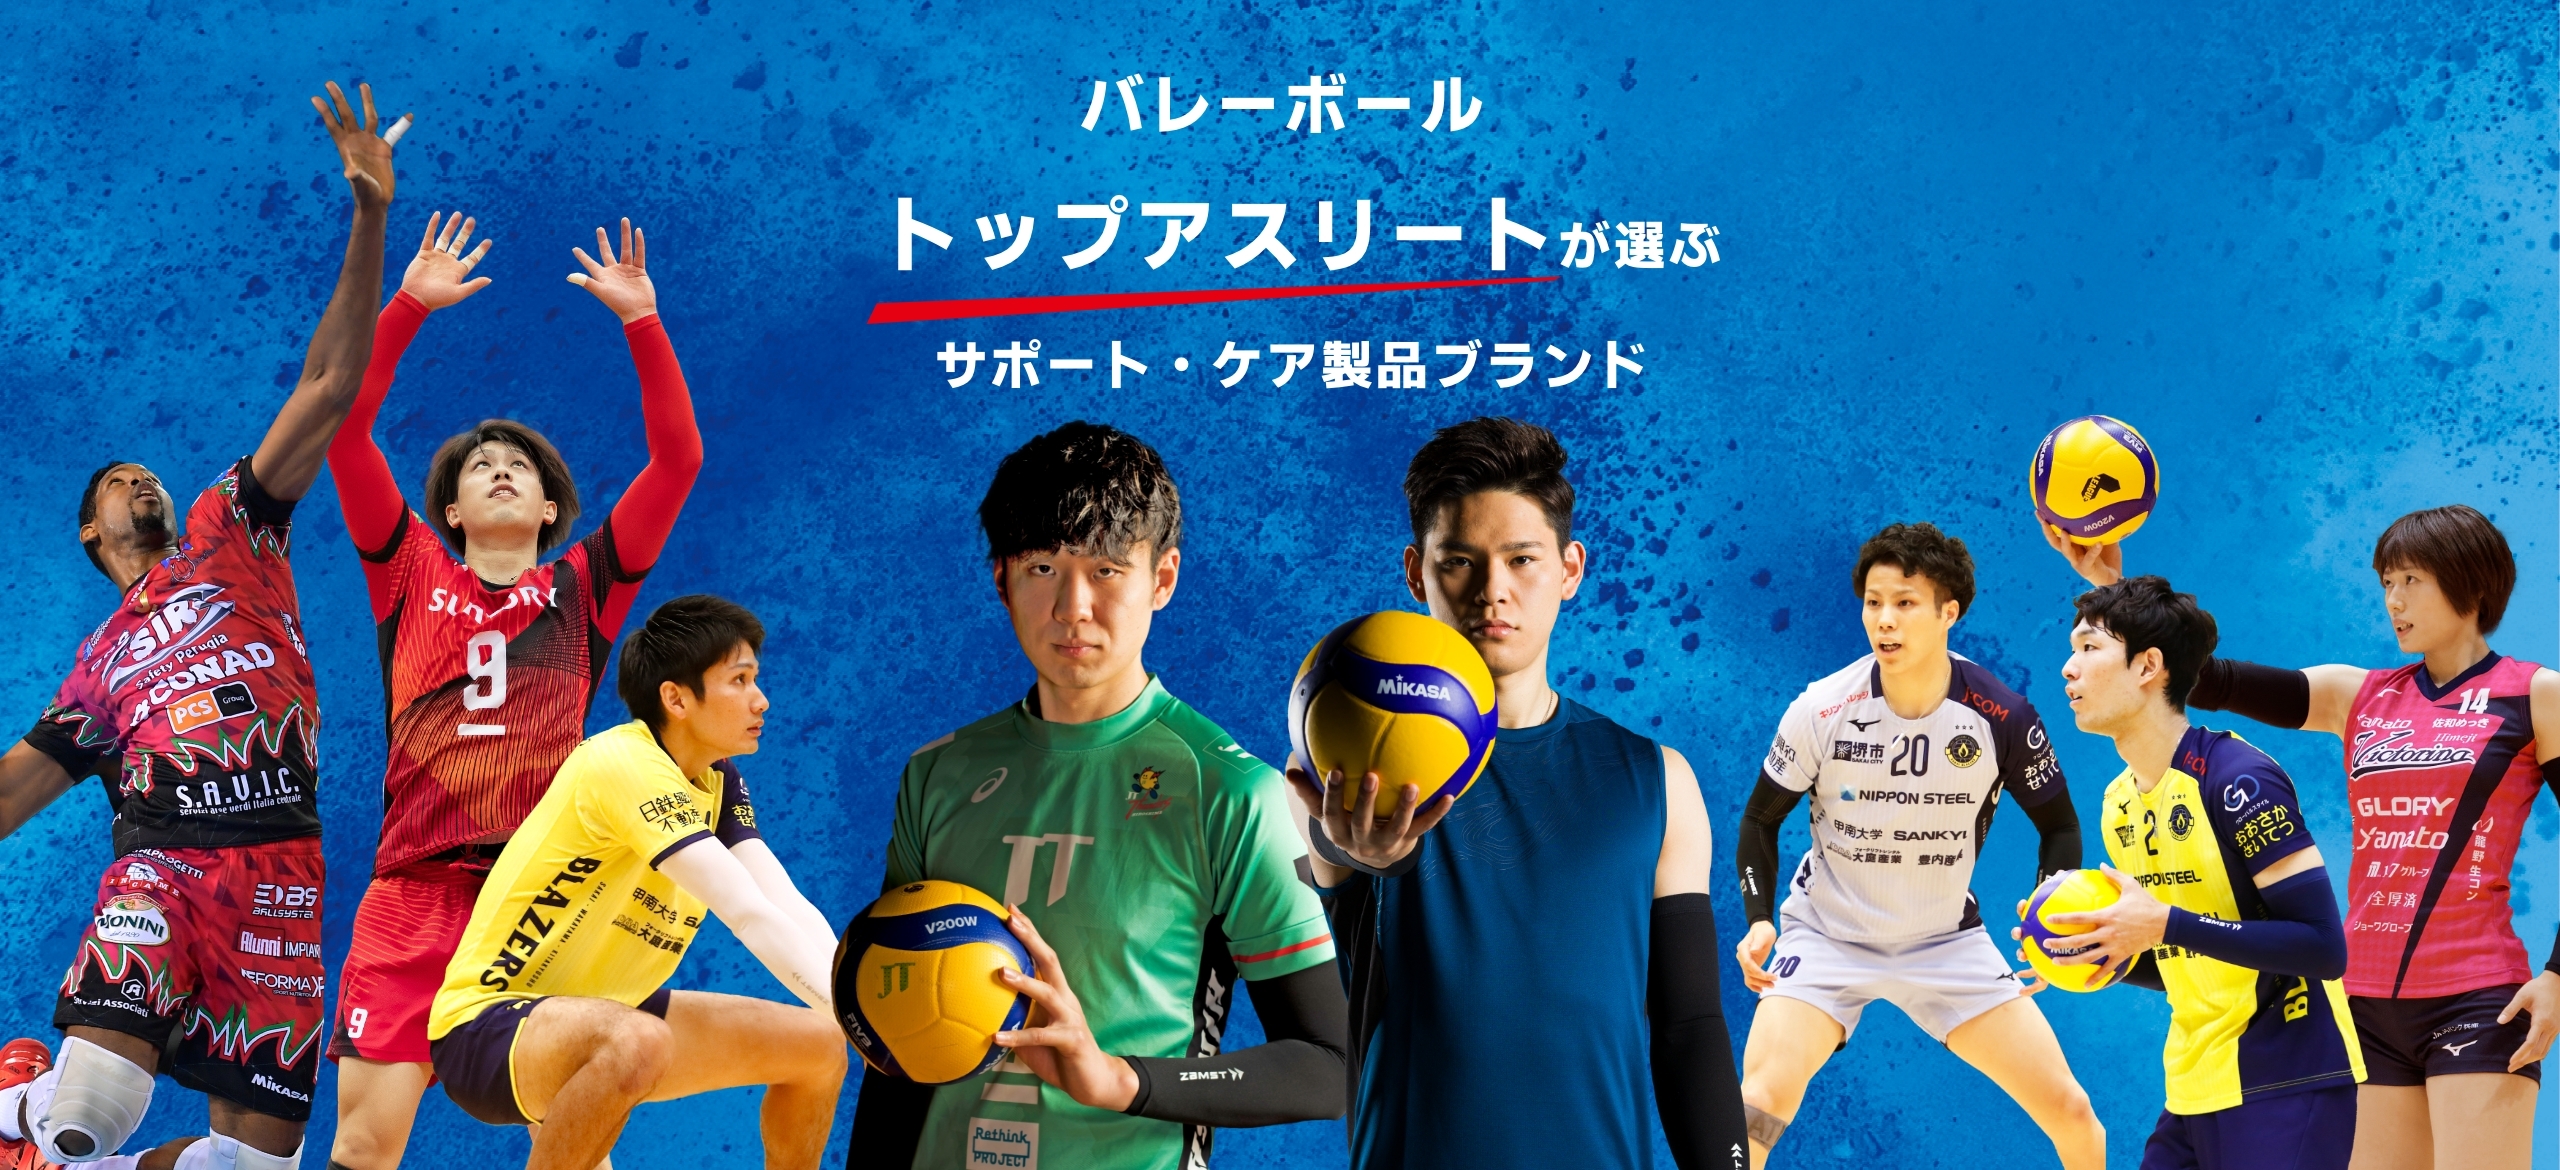 西田選手、小野寺選手などプロバレーボール選手が使用する製品ブランド ZAMST（ザムスト）